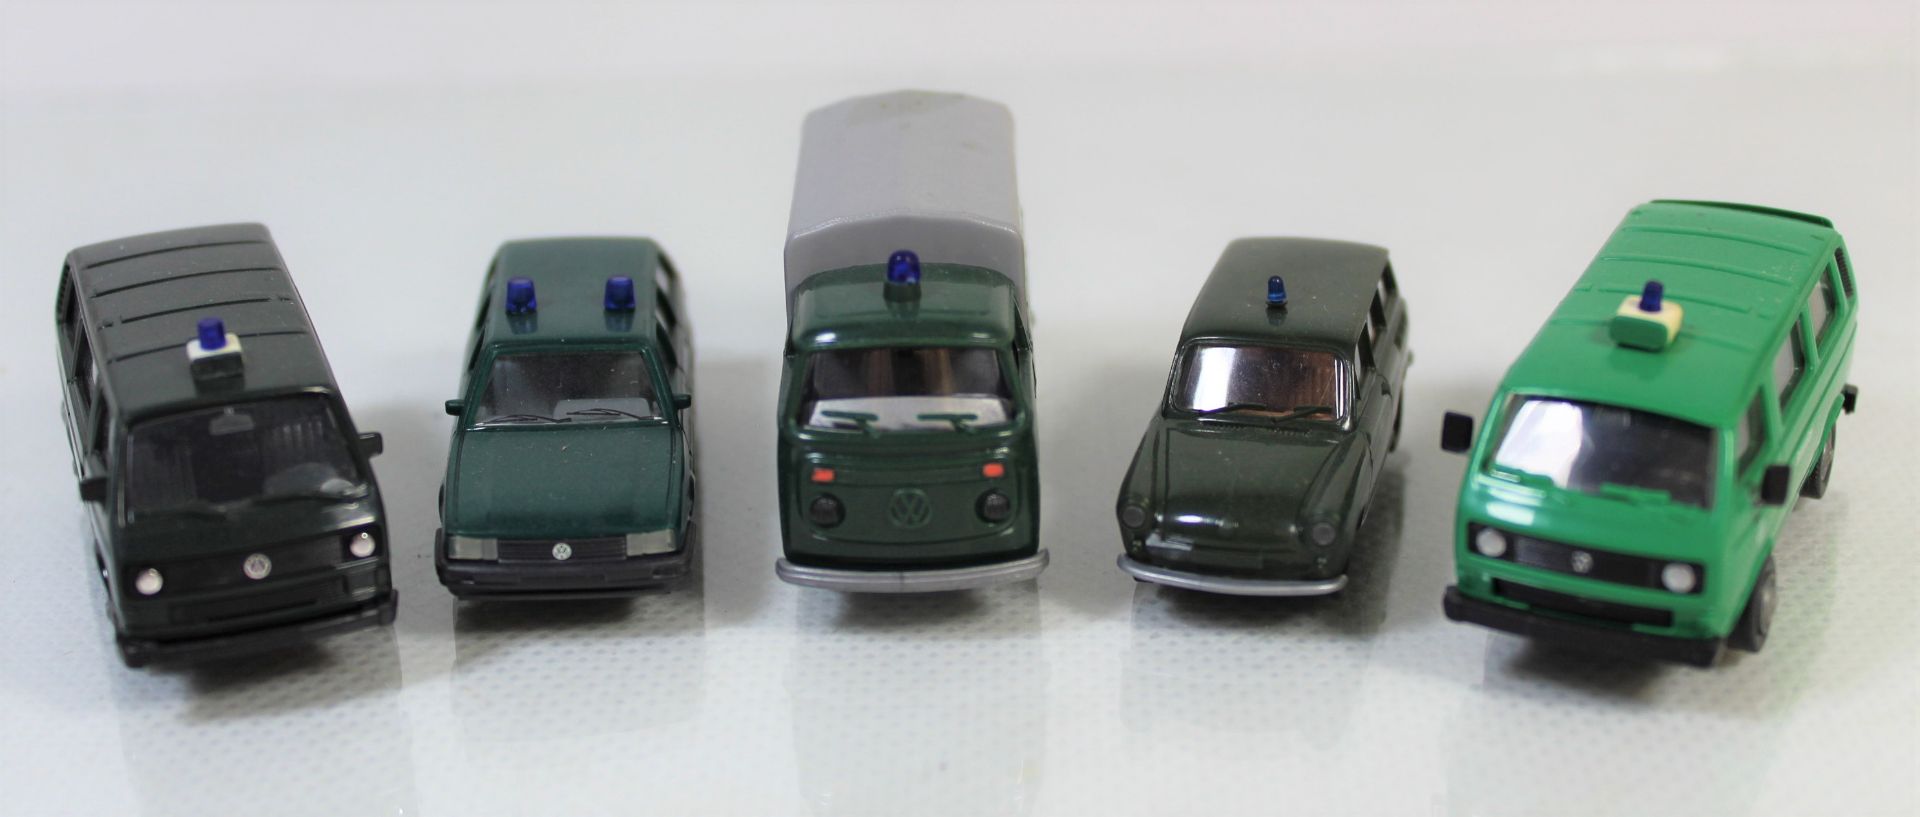 1x Busch, 1x Herpa, 1 x Brekina, 1 x APS und 1 x Roco, 5 Deutsche Bahnpolizei Fahrzeuge, Modellbauf